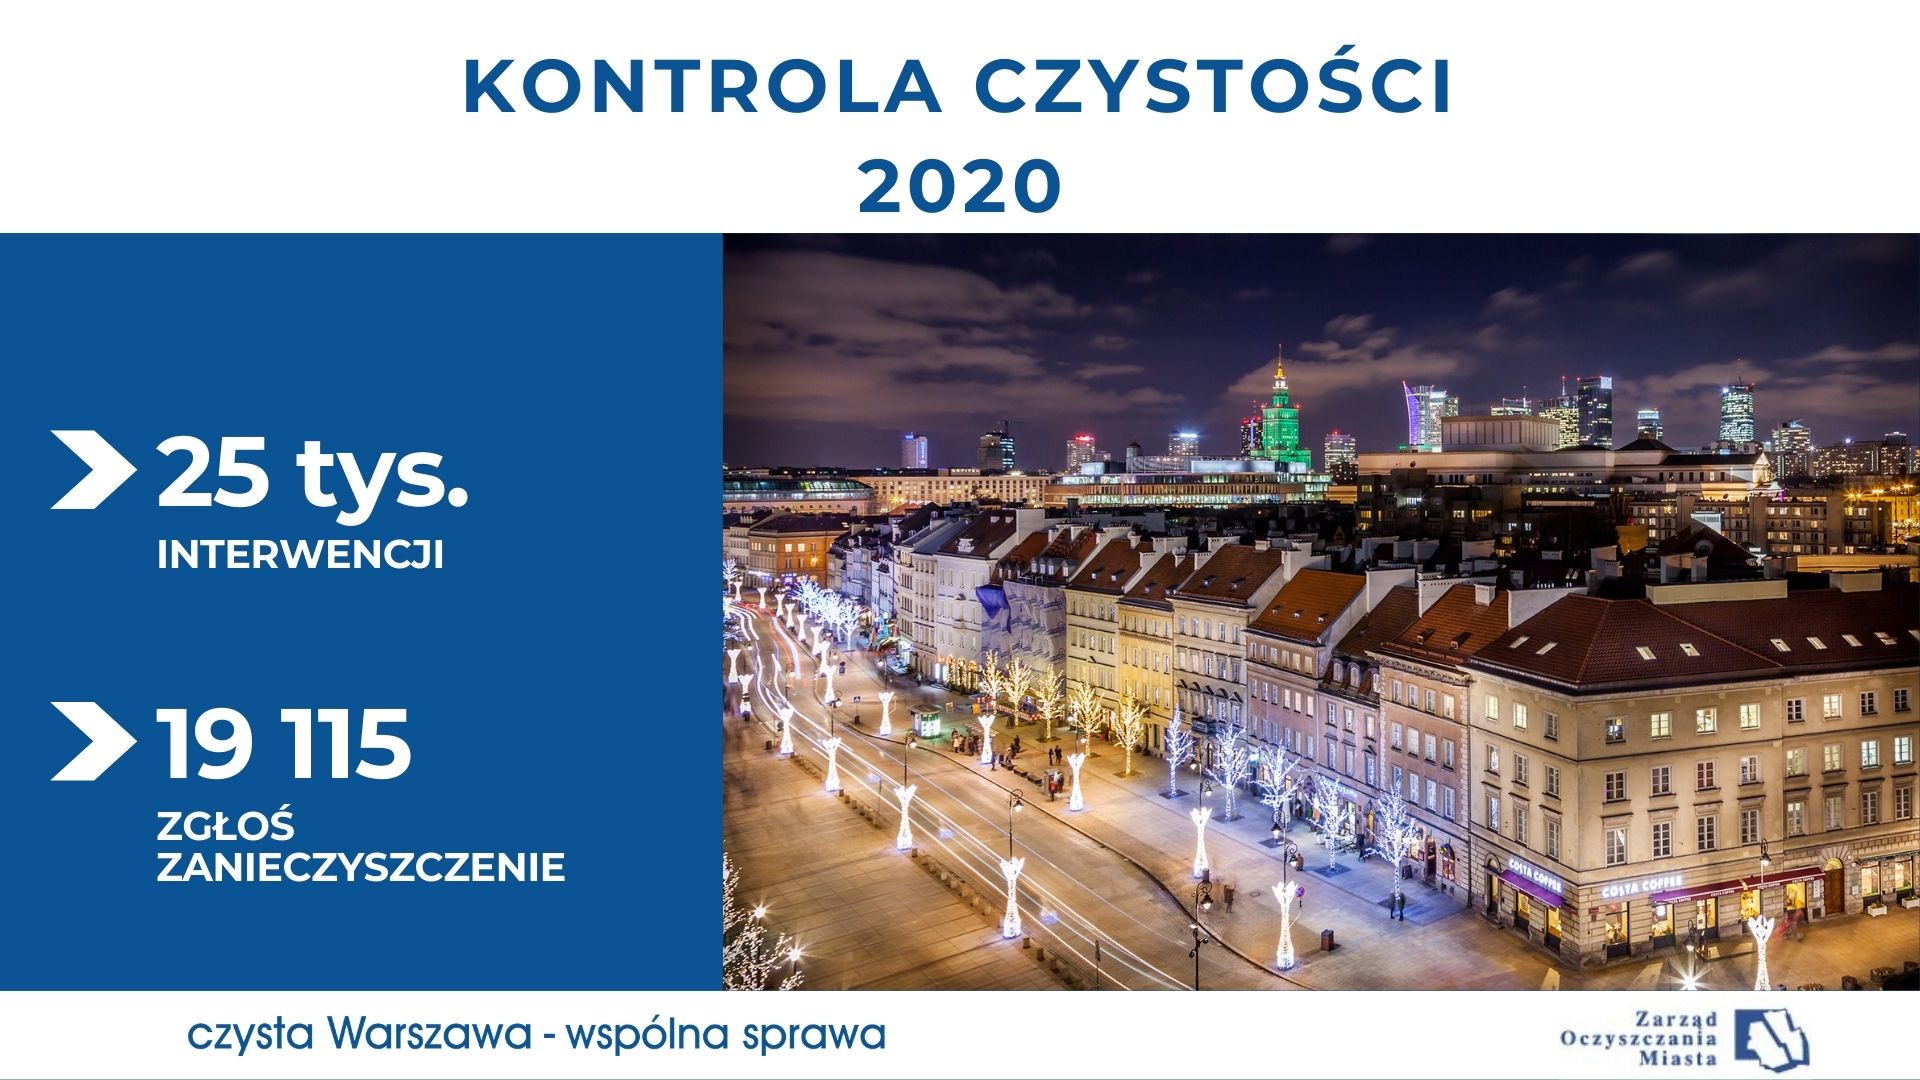 Dane liczbowe i nocny widok na ul. Krakowskie Przedmieście w Warszawie, ze świąteczną iluminacją na latarniach